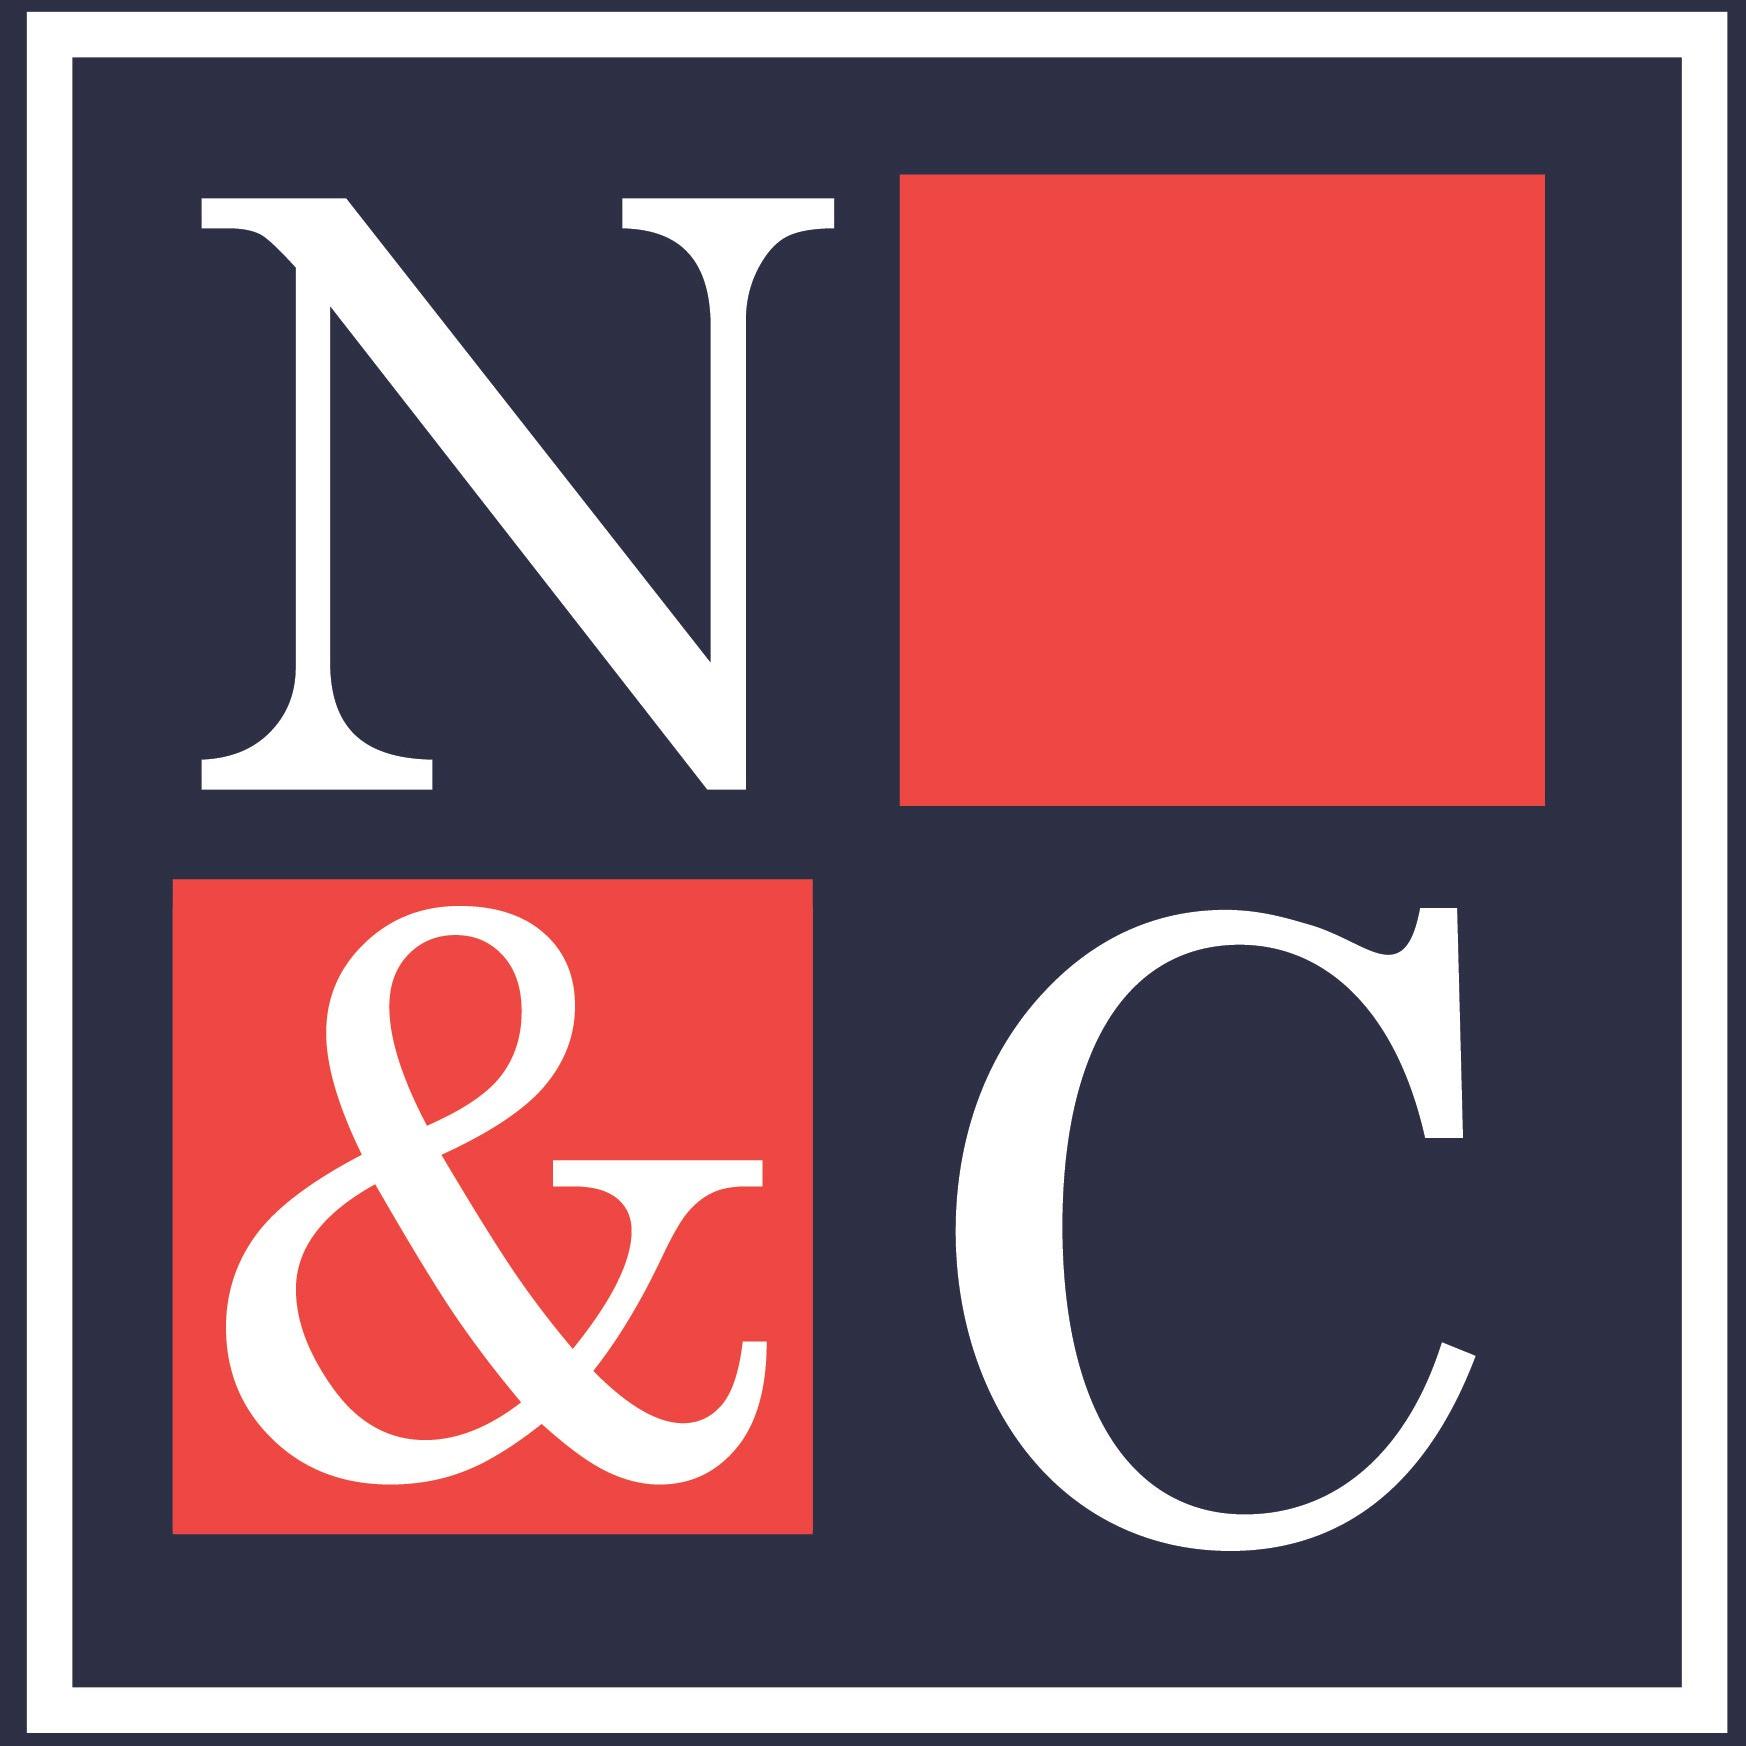 Nadrich & Cohen, LLP Logo